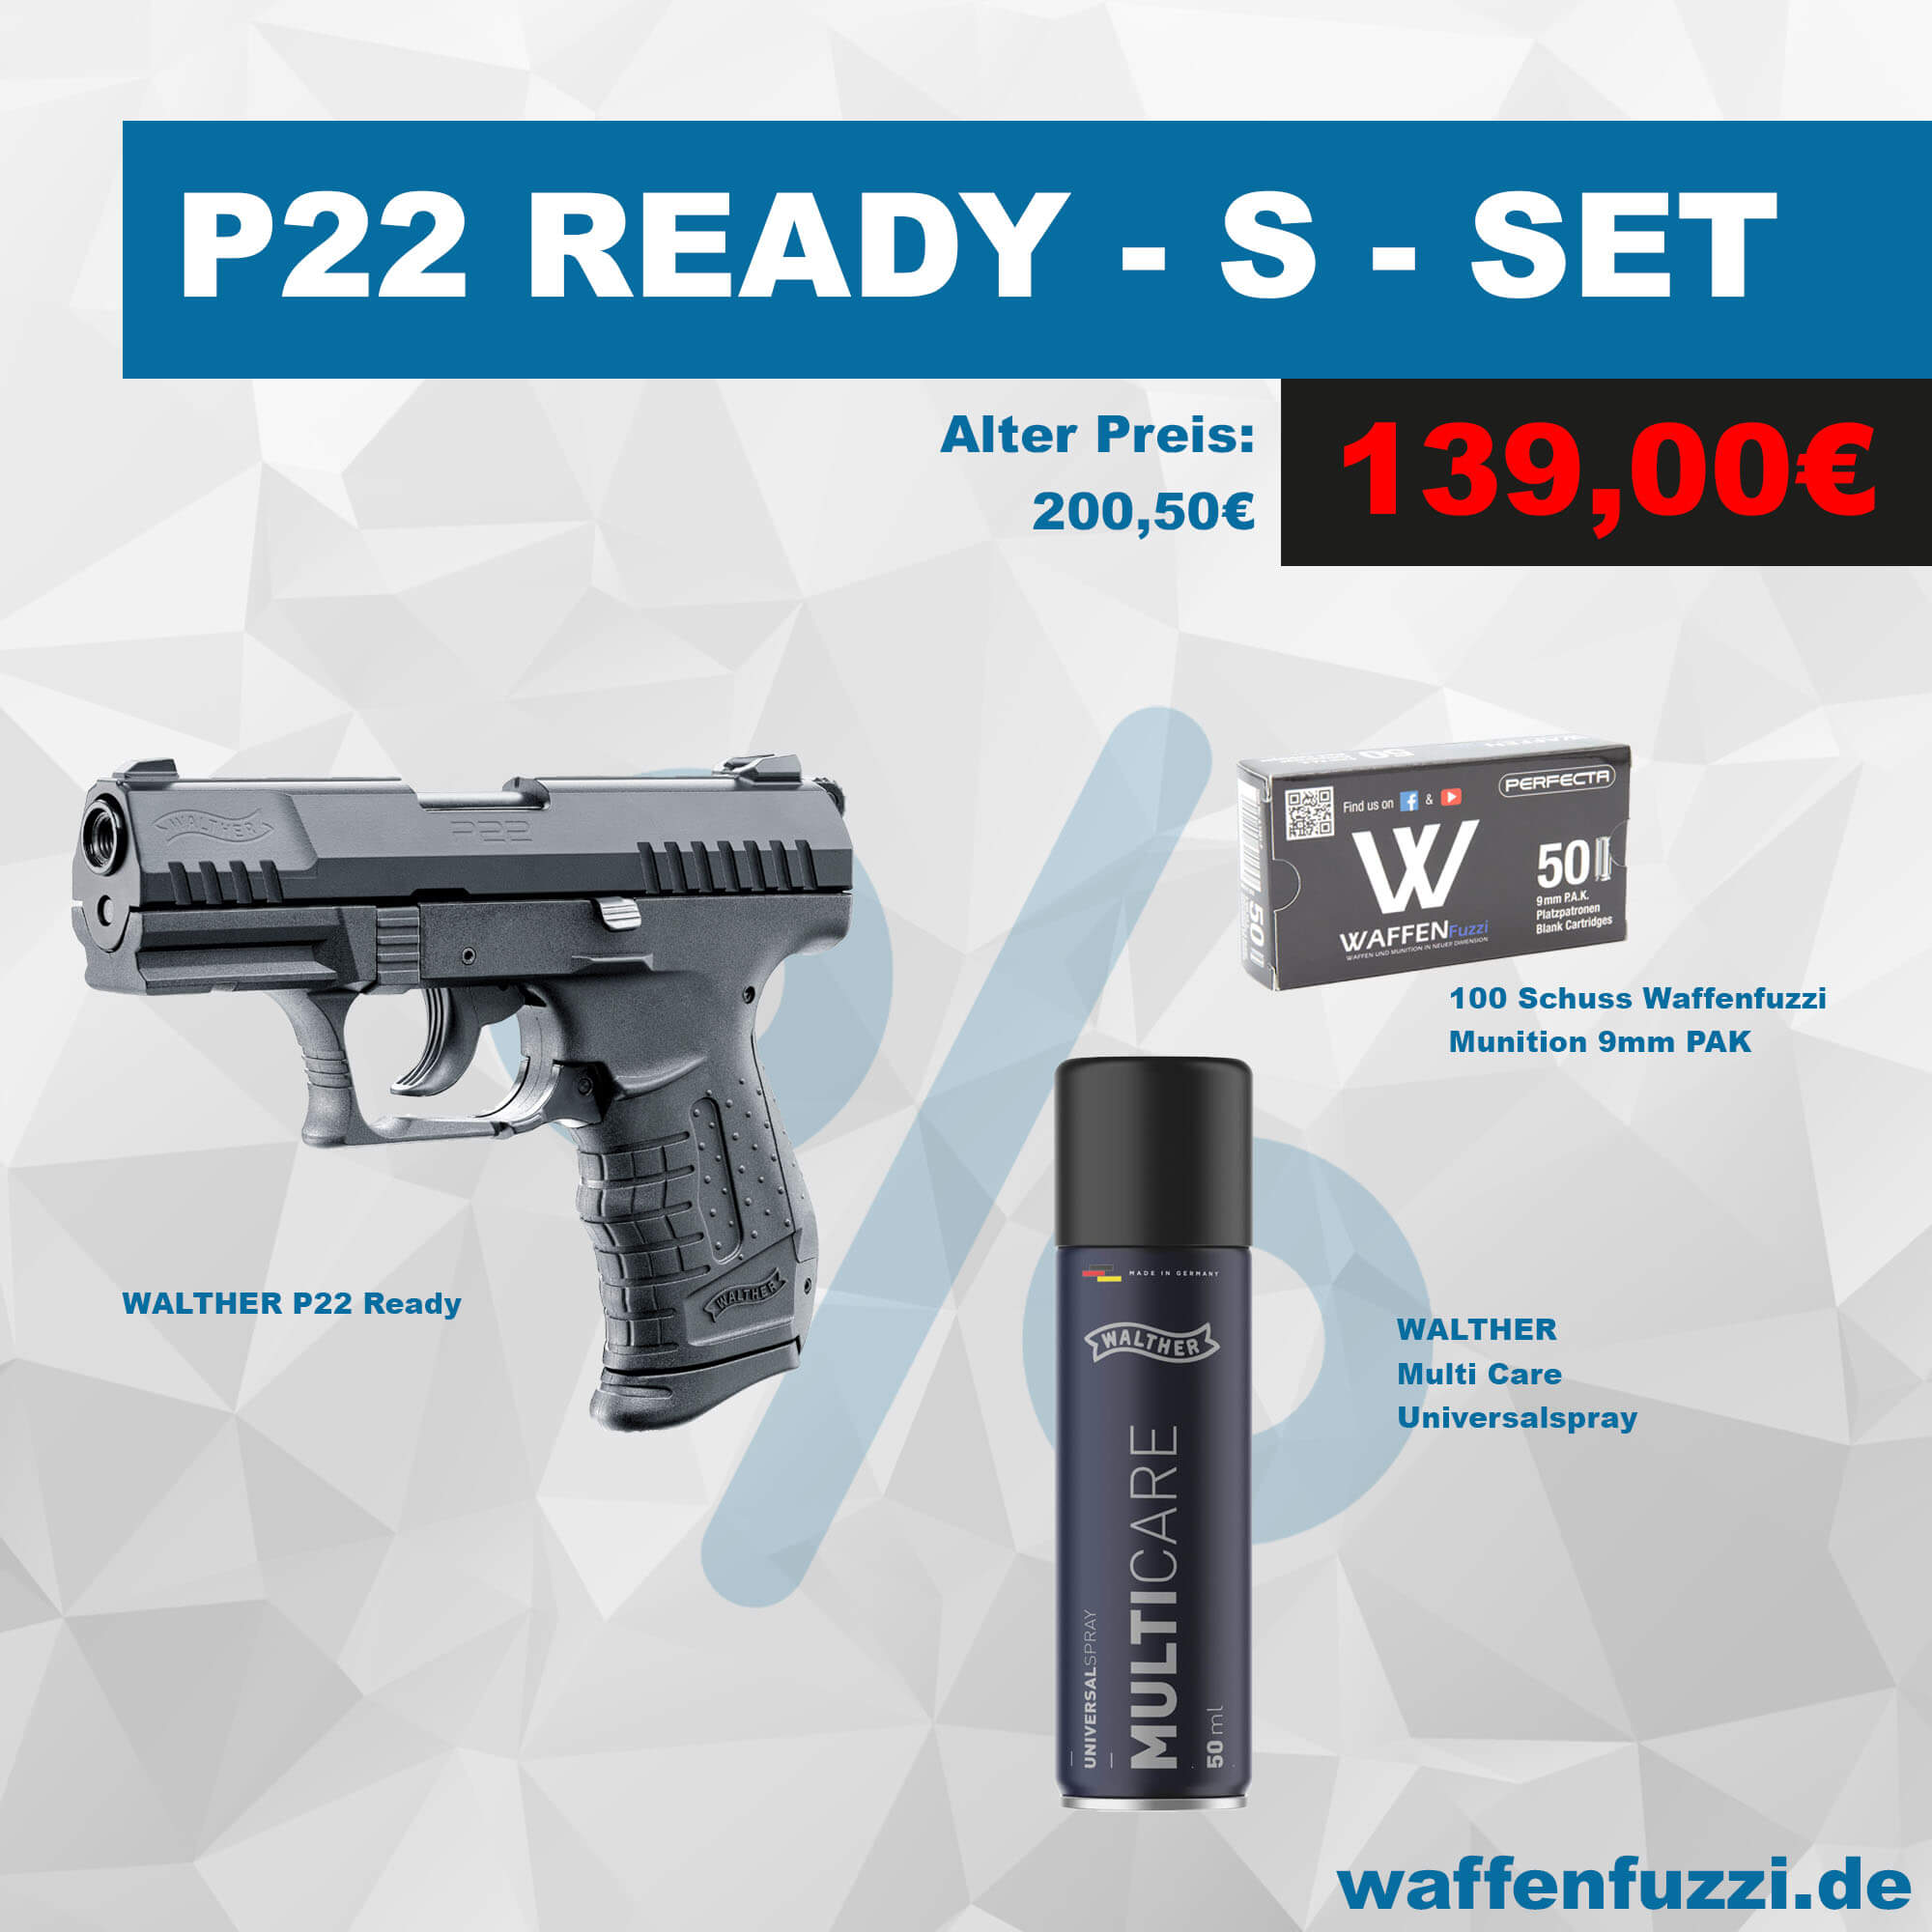 Waffenfuzzi Walther P22 Ready Sparset für unschlagbare 139 Euro